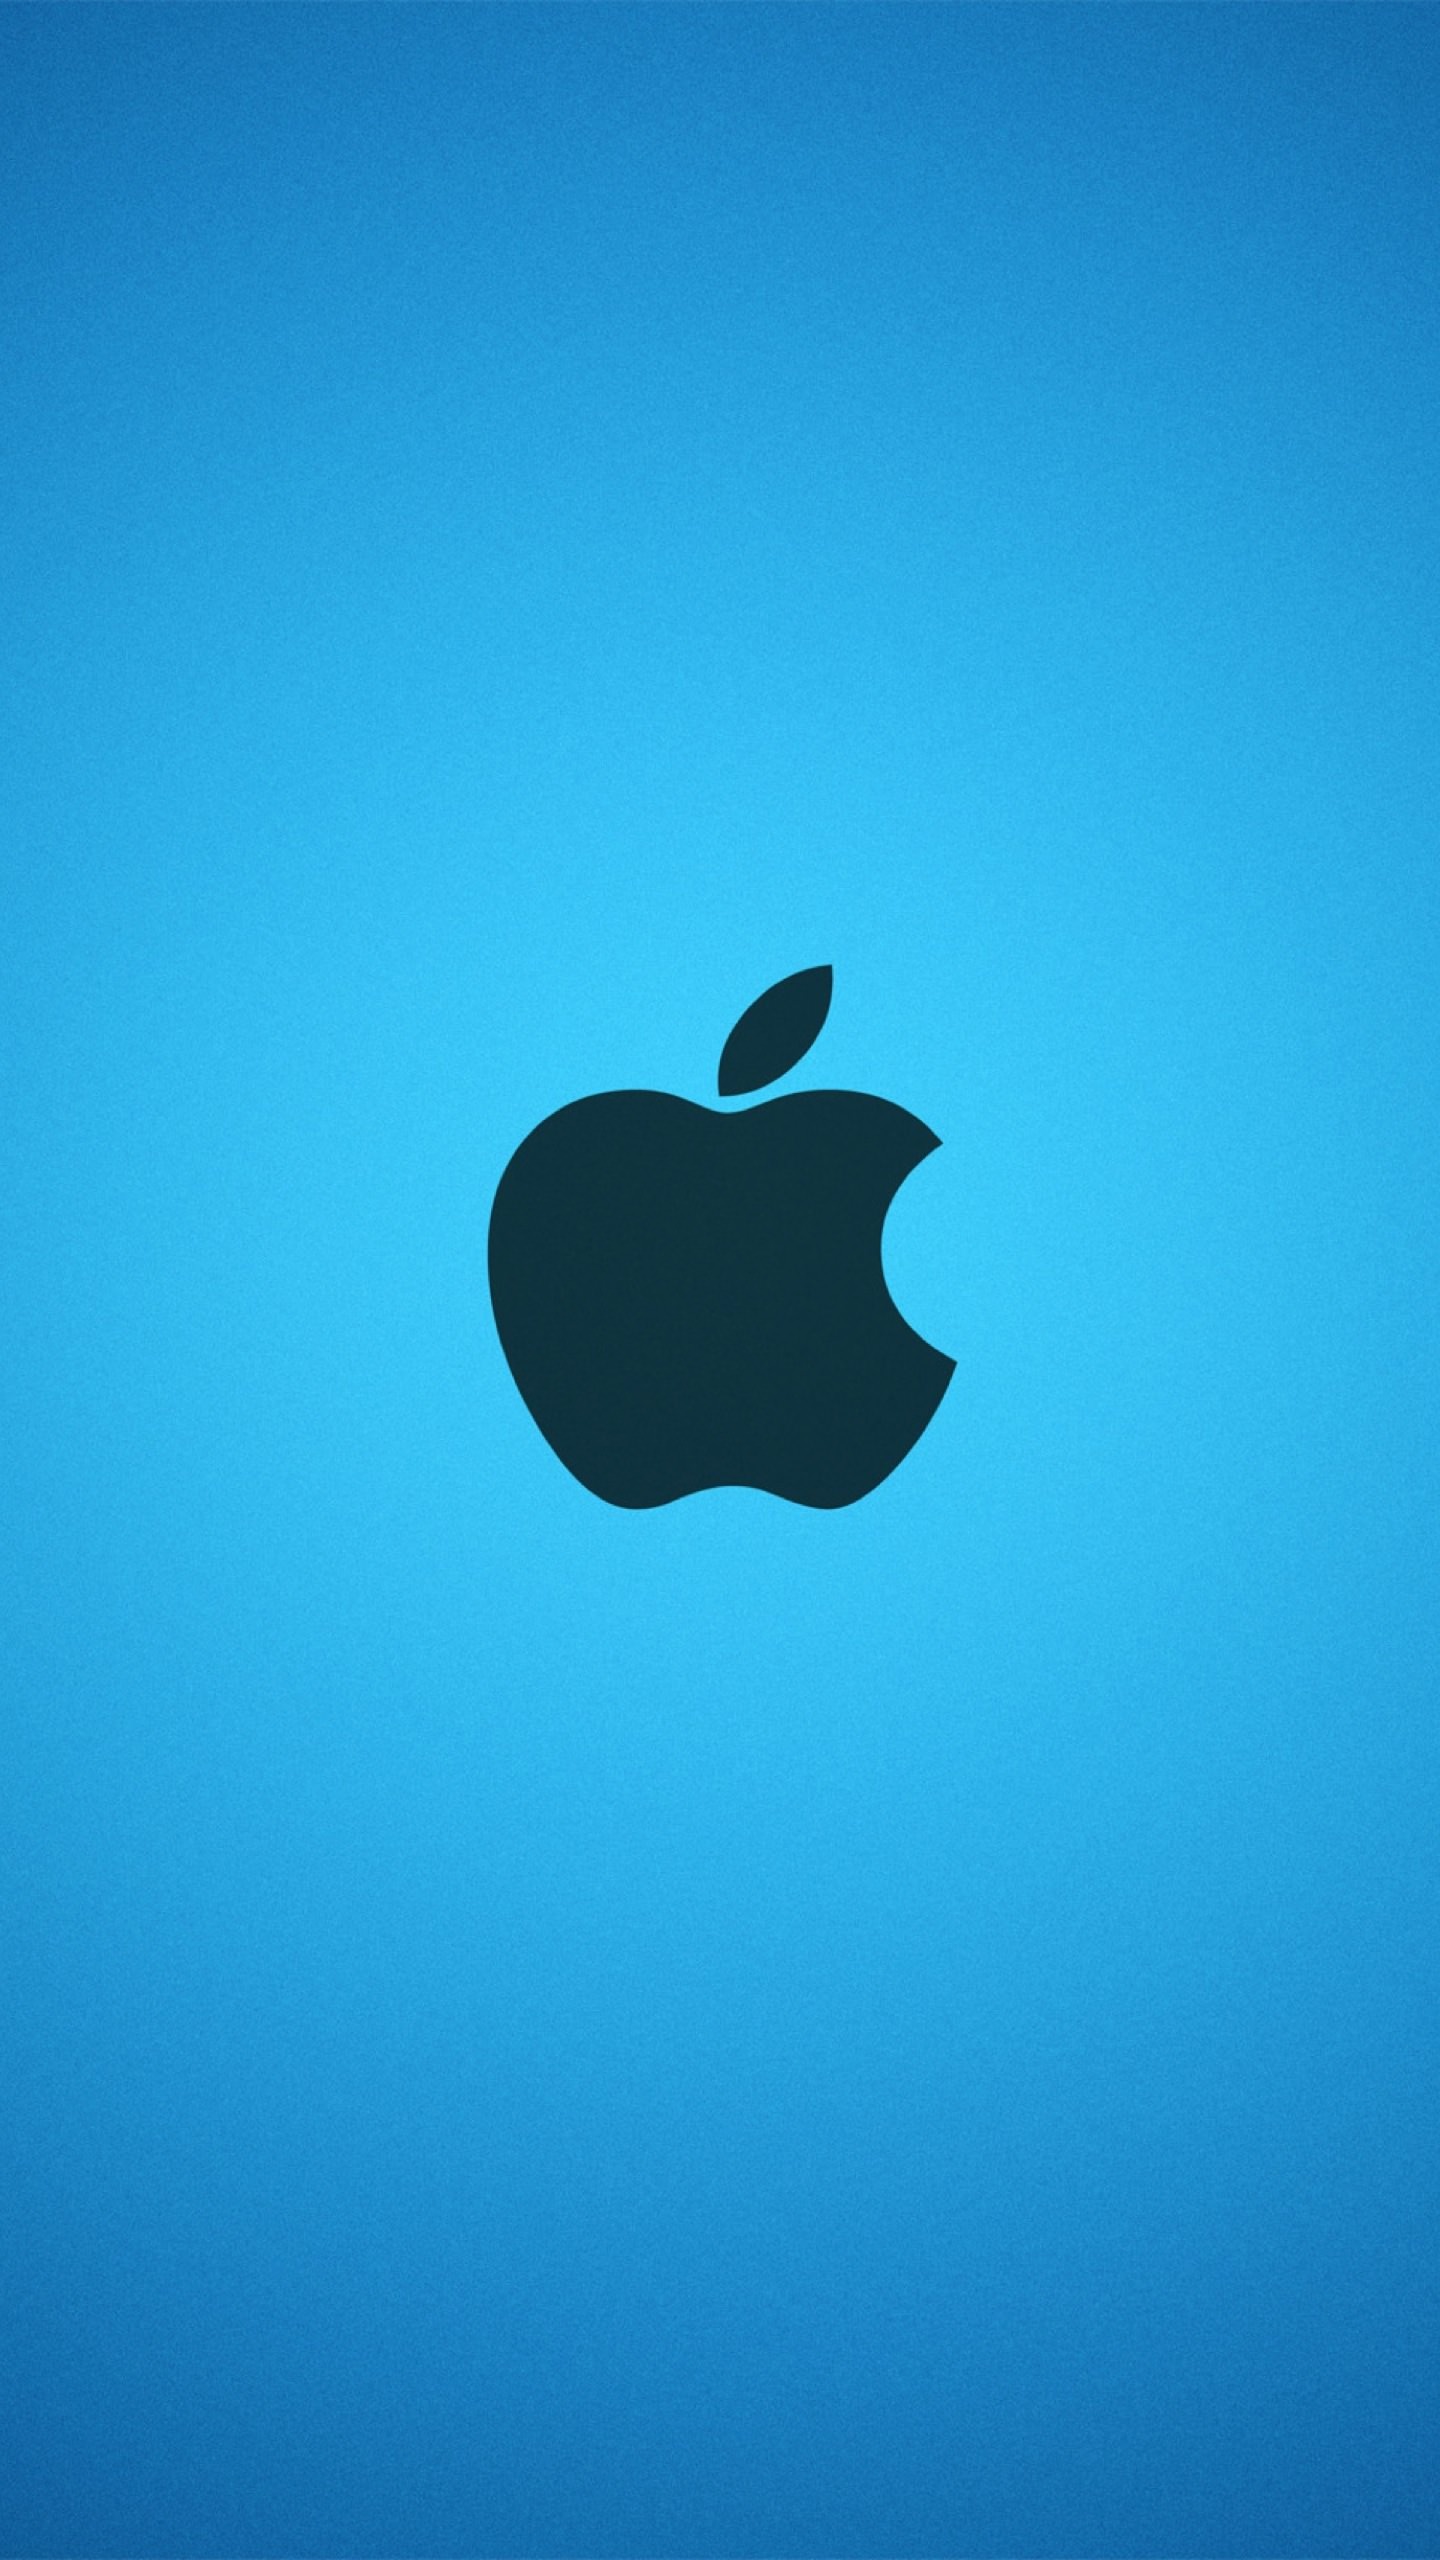 Телефон айфон яблоко. Обои на айфон. Логотип Apple. Заставка на айфон высокого качества. Красивые картинки на айфон.